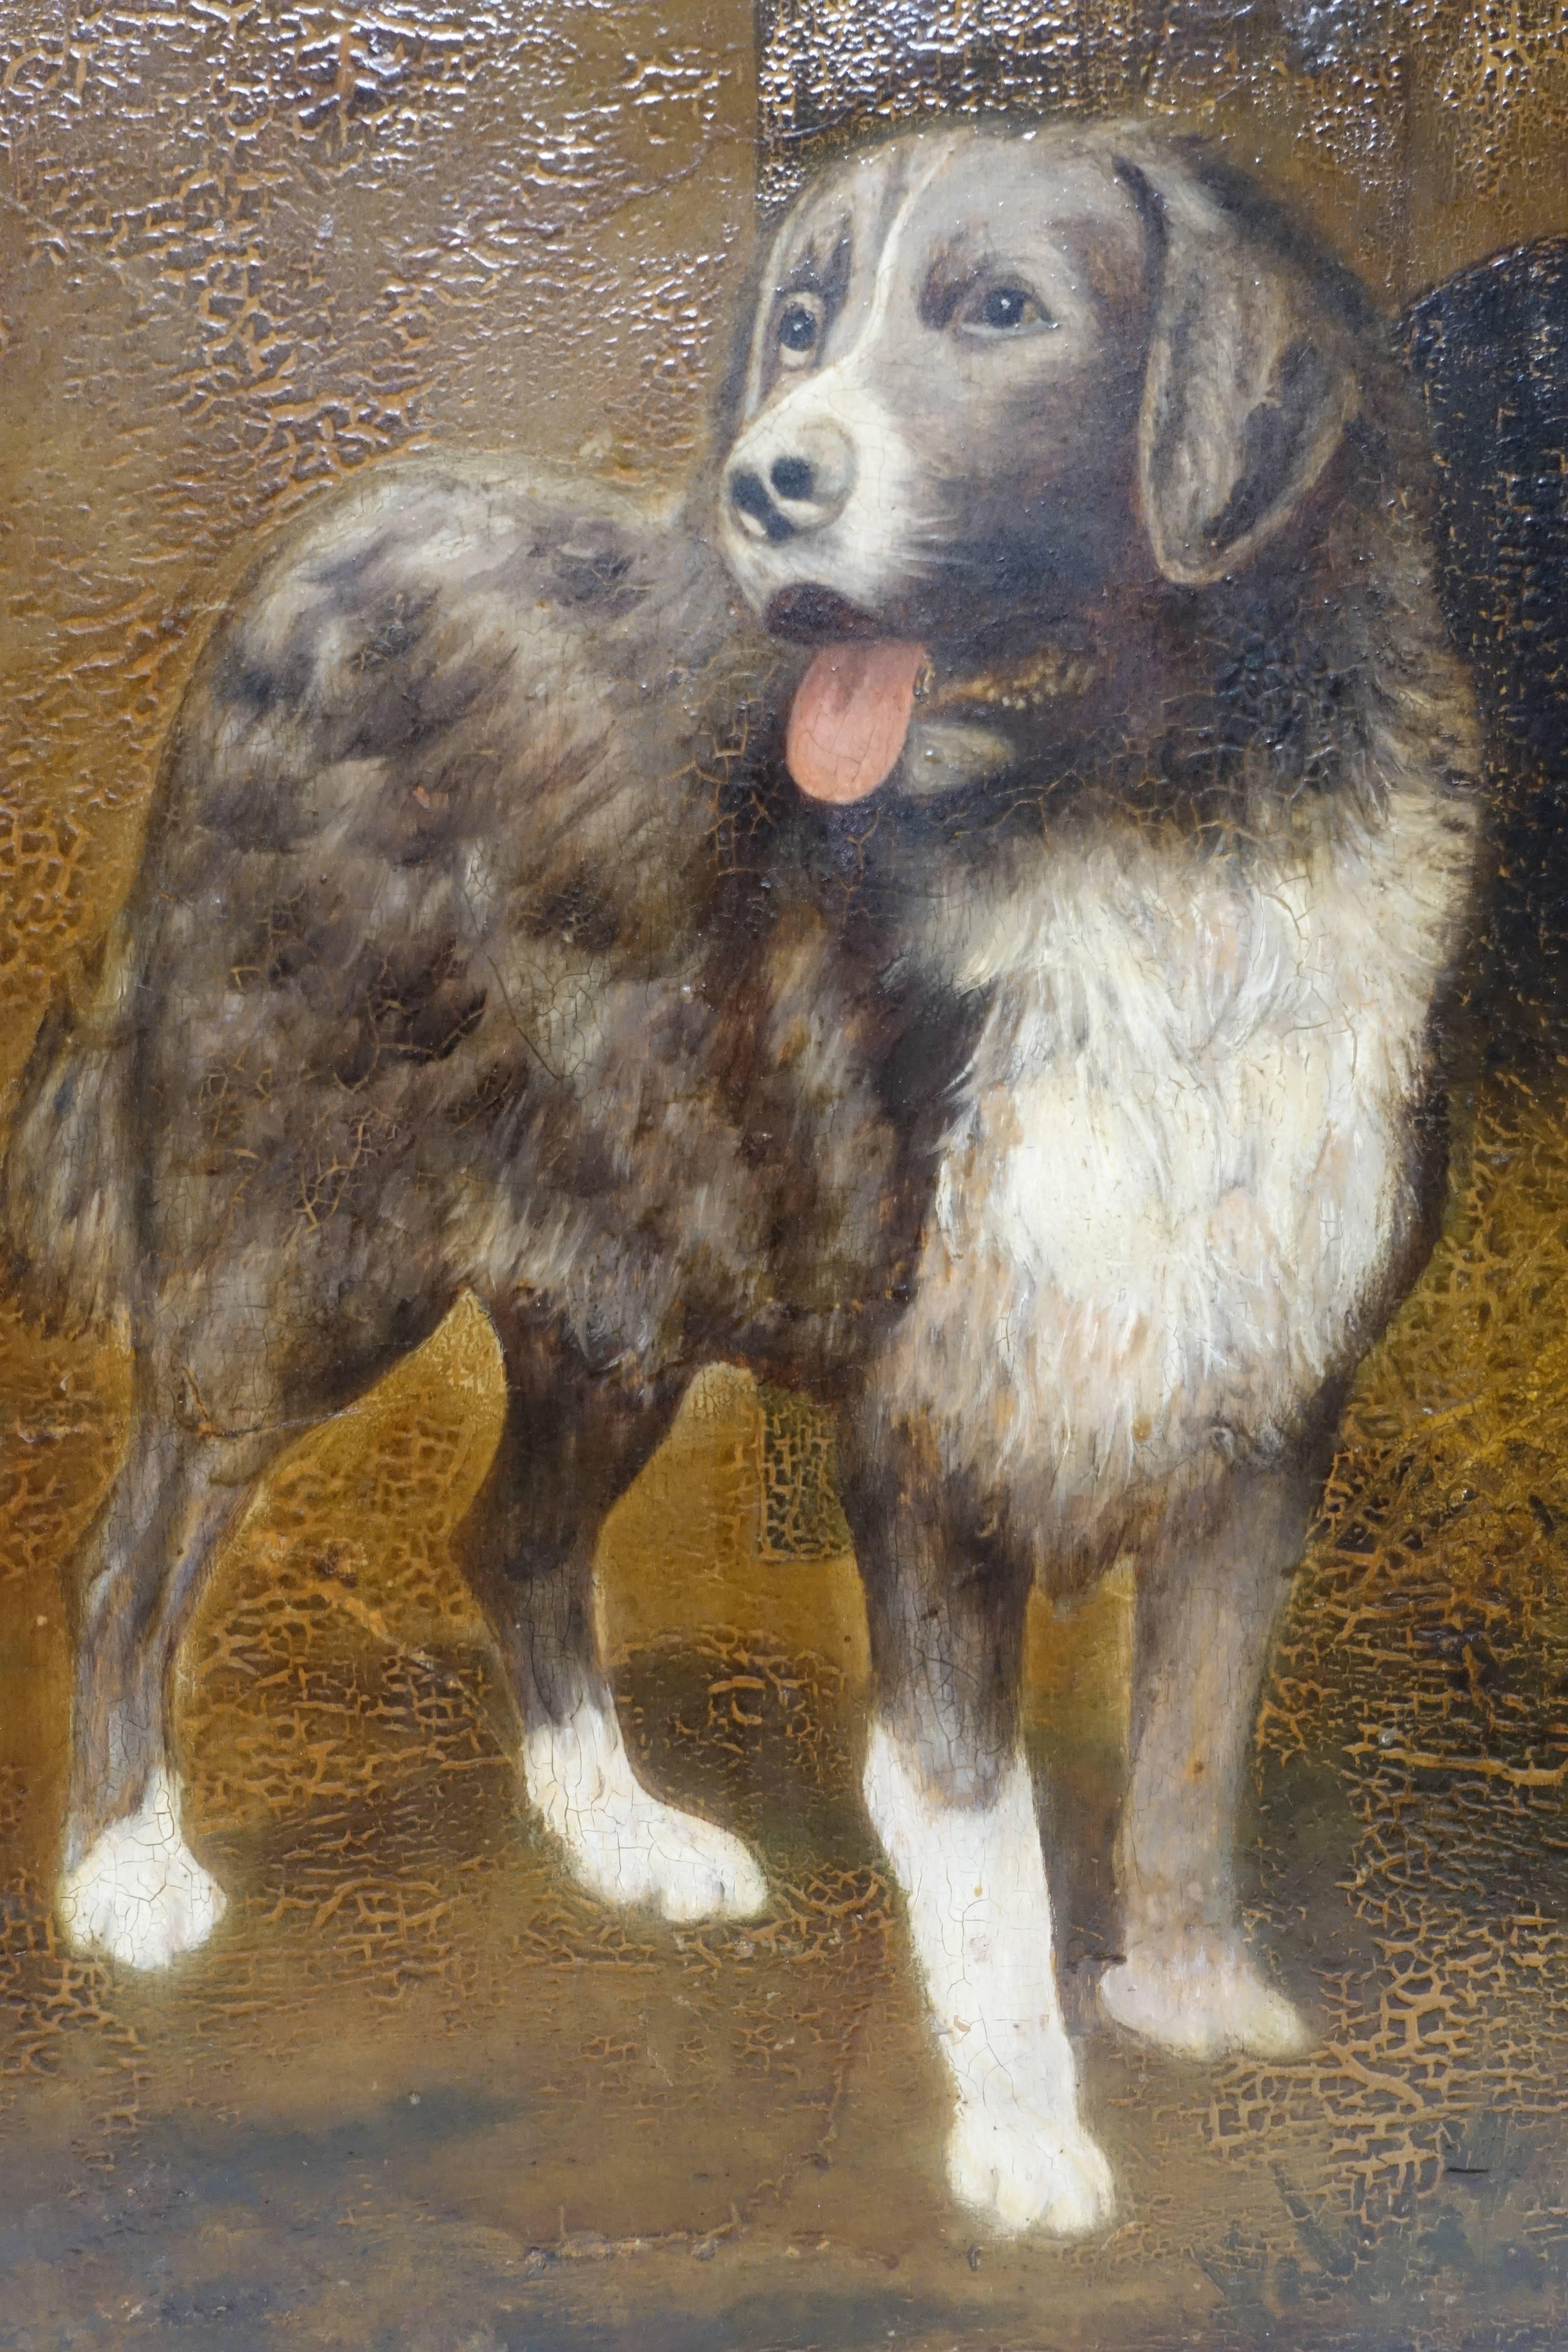 Peinture anglaise de la fin du 19e siècle représentant un chien. 
Visage expressif et détaillé, magnifiquement peint.
Peinture à l'huile sur un panneau de bois épais. Présente quelques craquelures anciennes au niveau du vernis.
En très bon état.